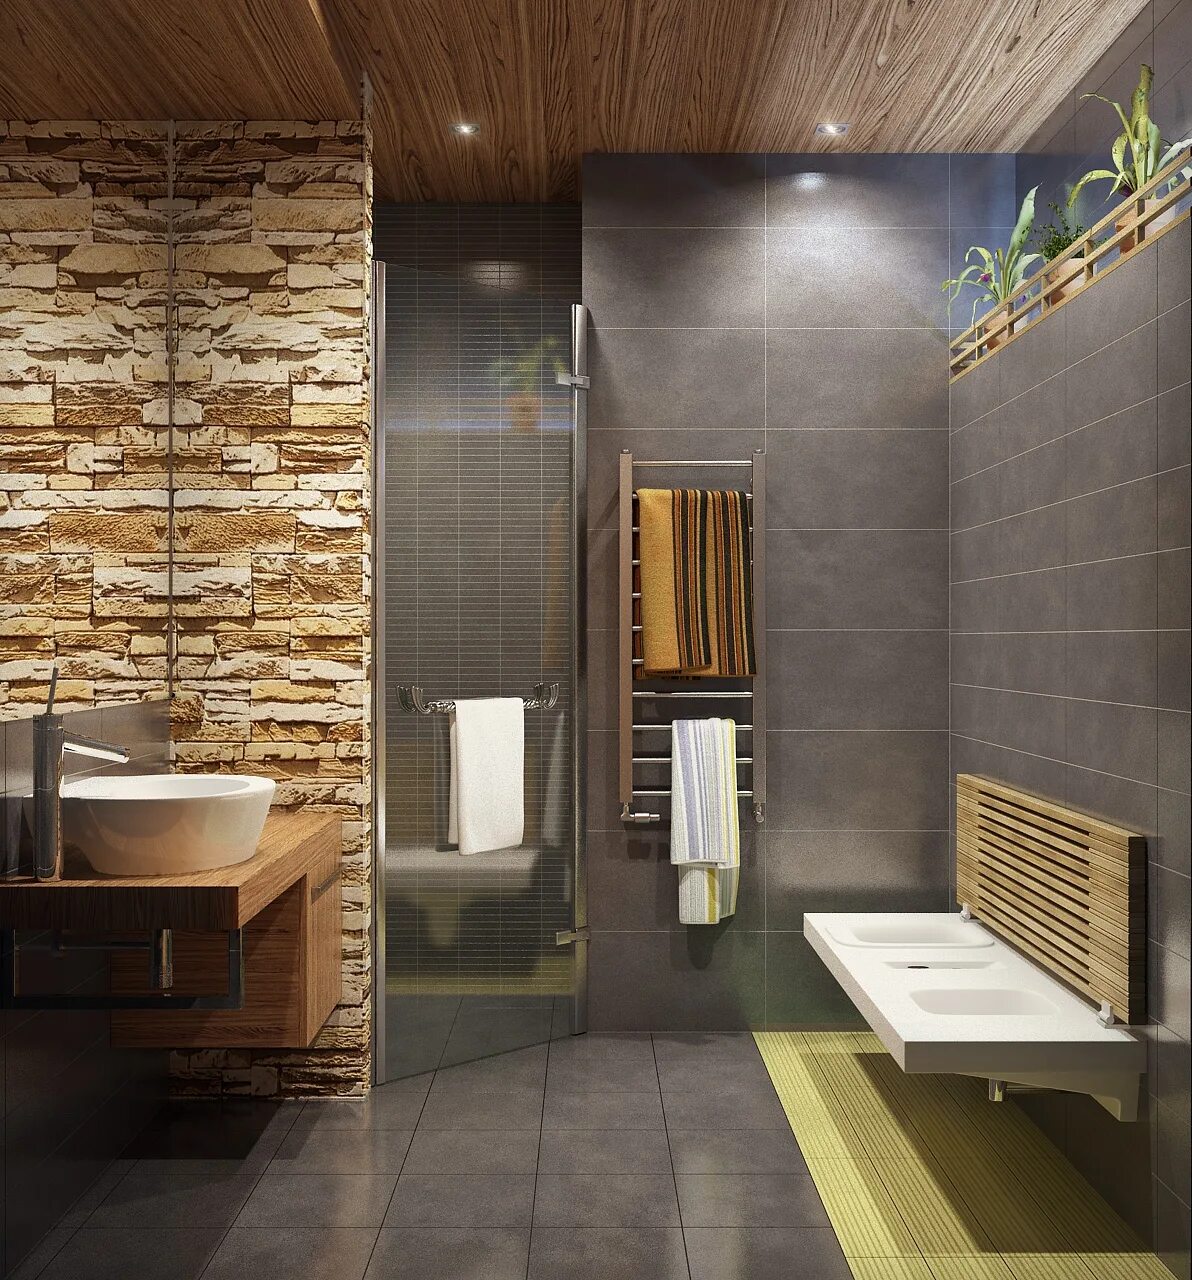 Потолок плитка в ванной комнате. Деревянный потолок в ванной. Дерево в интерьере ванной комнаты. Деревянные панели в ванной комнате. Современная отделка санузла.